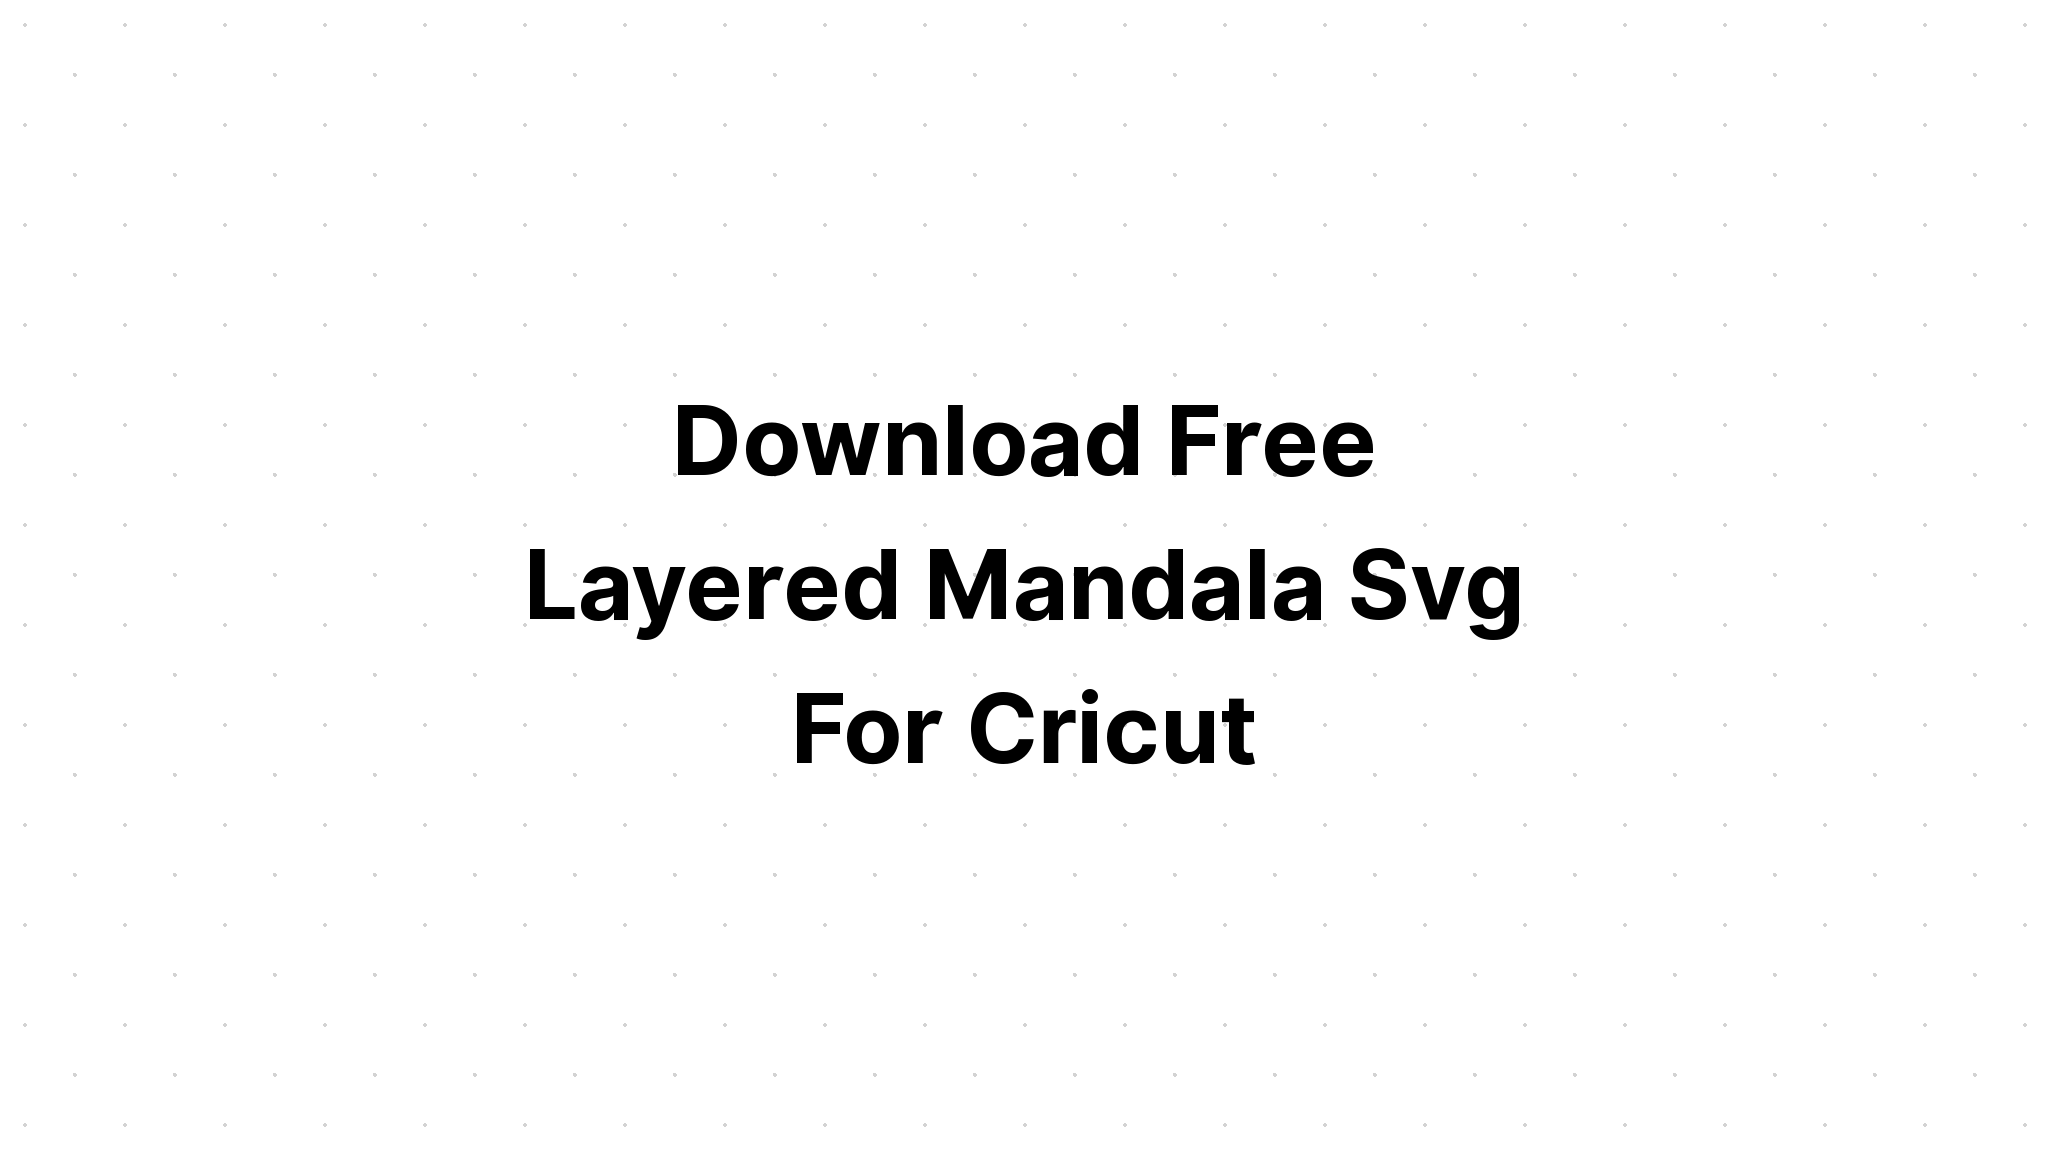 Download Layered Mandala Elephant Svg Free - Layered SVG Cut File